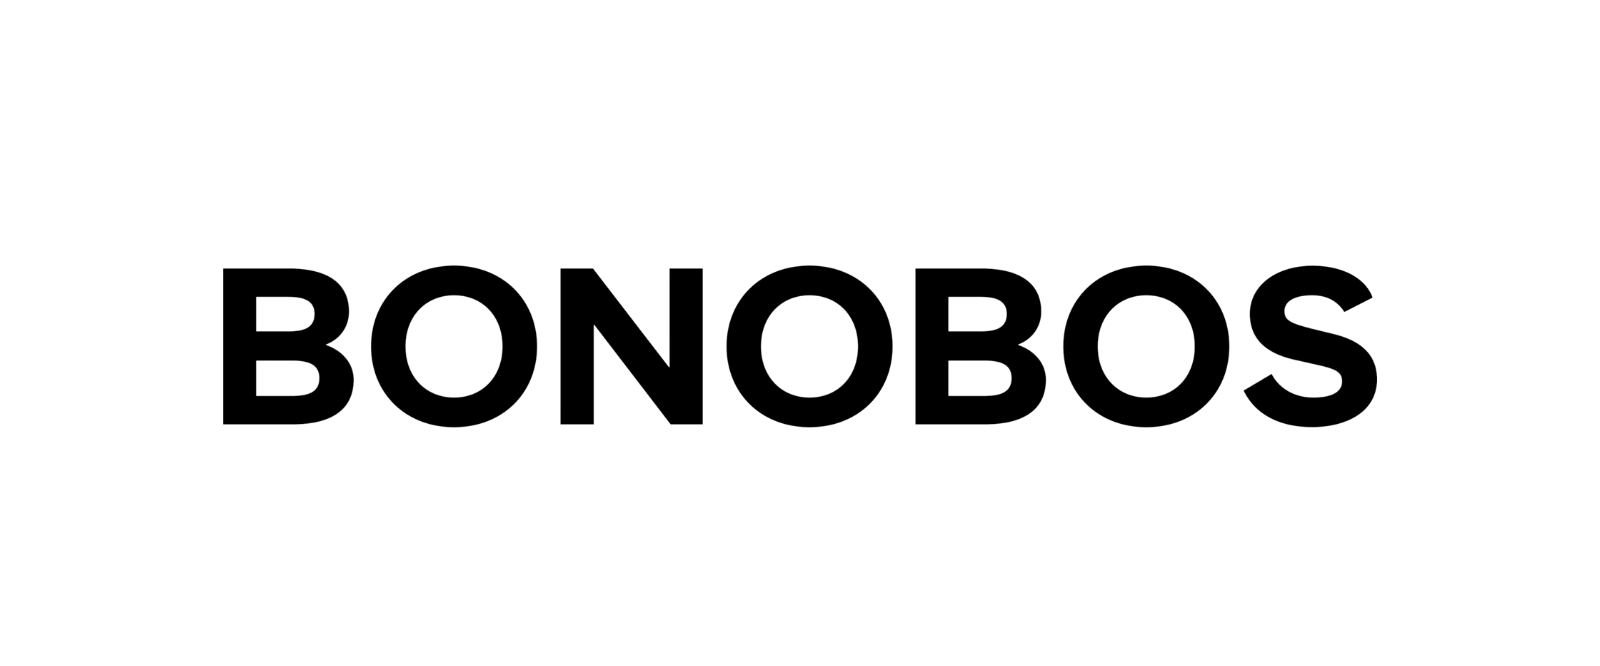 bonobos.png